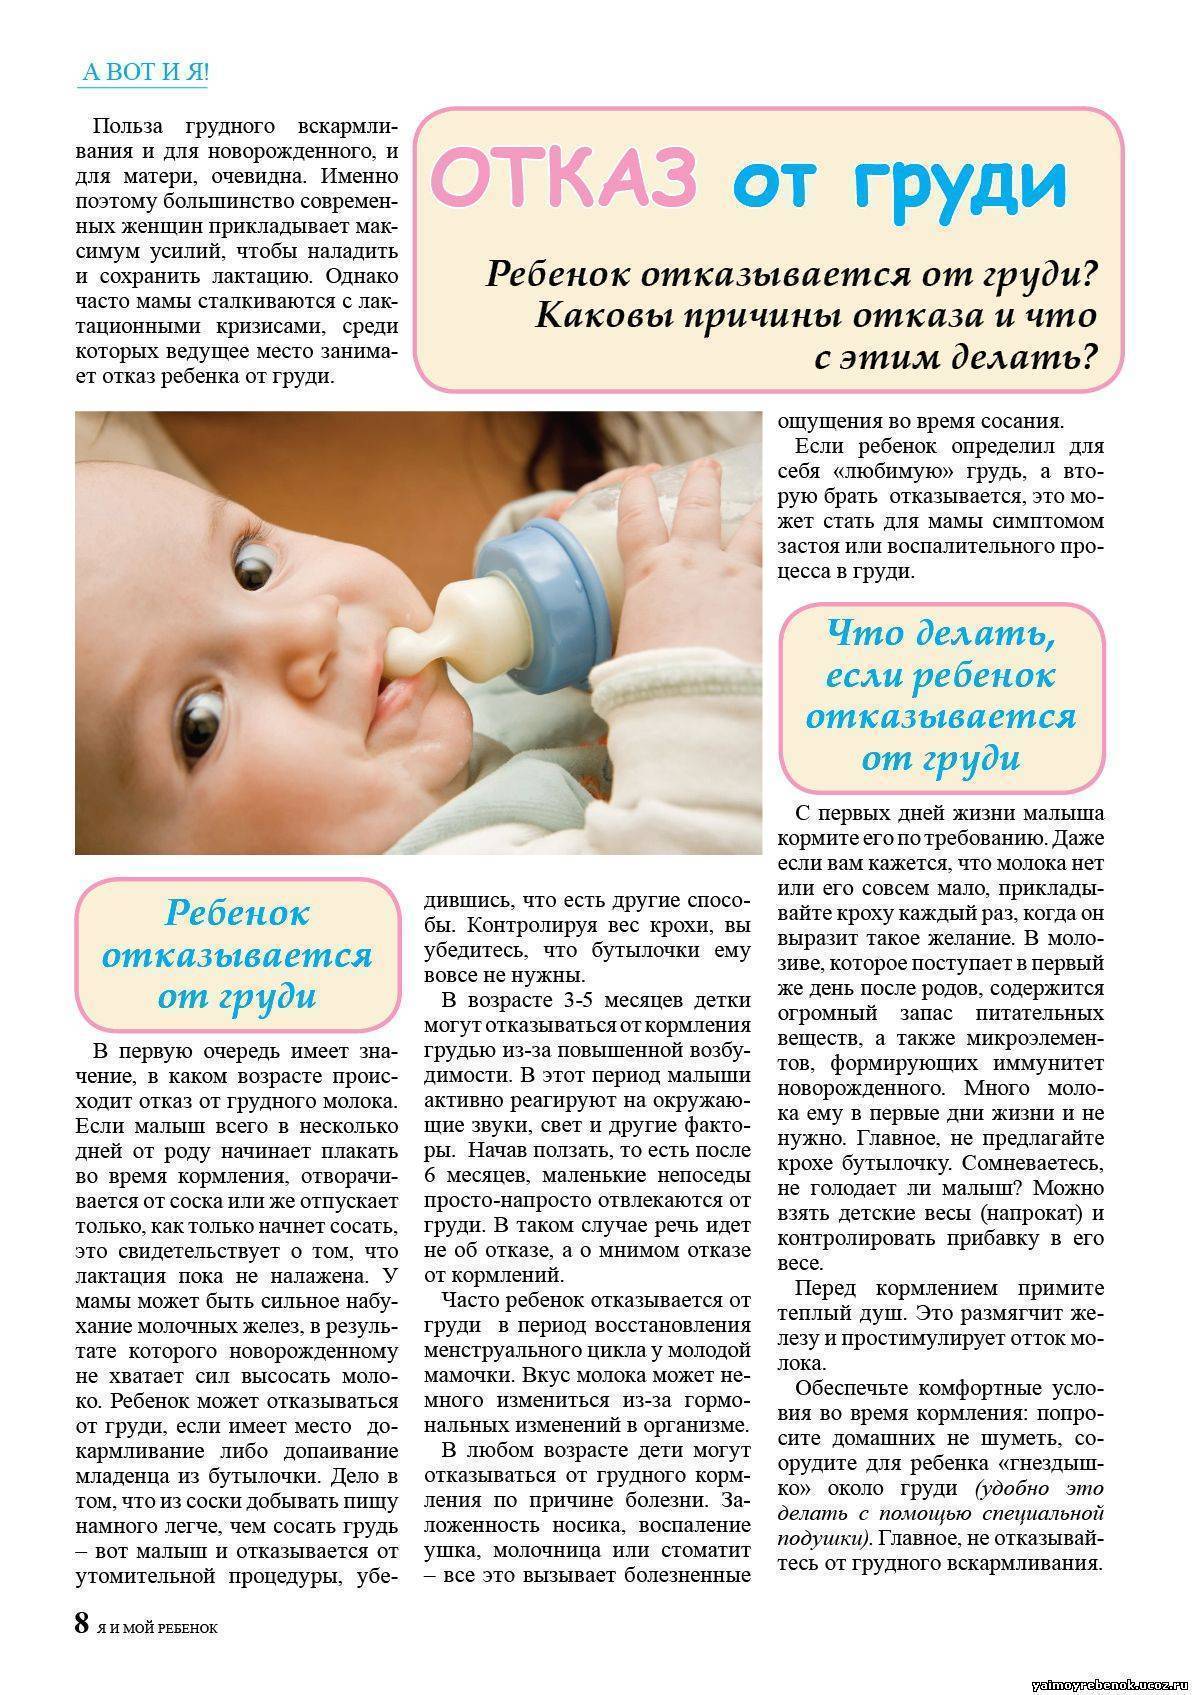 Как давать водичку новорожденному при грудном и искусственном вскармливании? - журнал kinderboo.ru